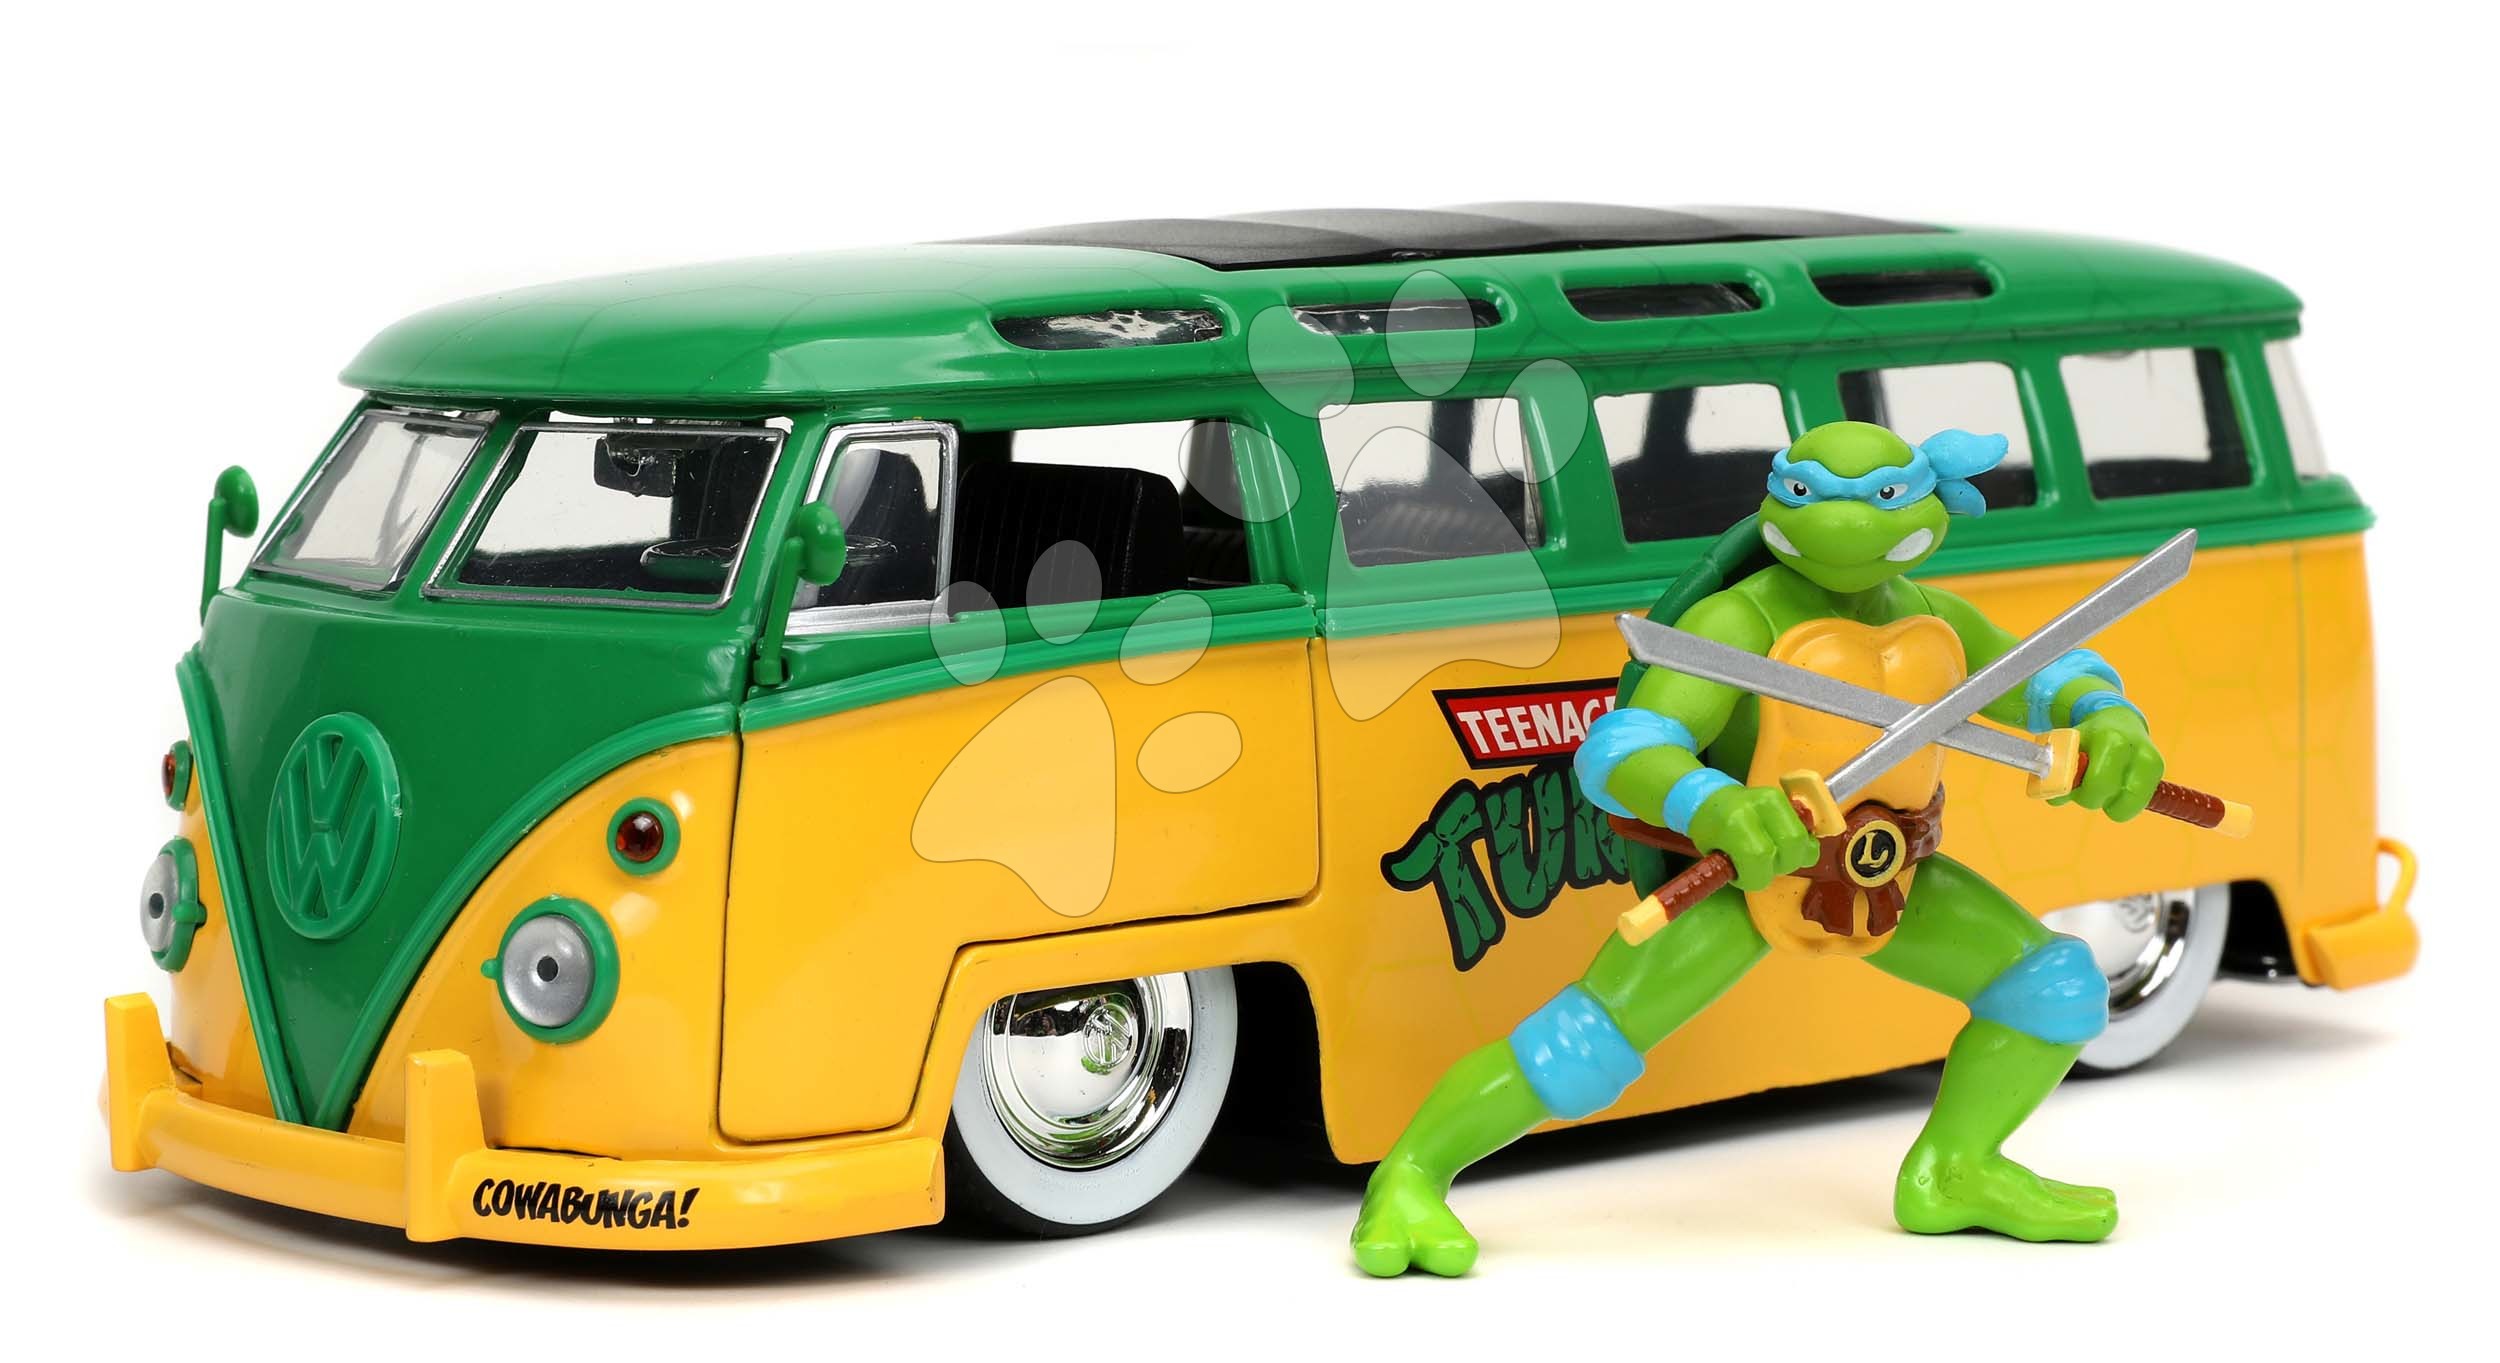 Autíčko Ninja Ninja želvy VW Bus 1962 Jada kovové s otevíracími dveřmi a figurkou Leonarda délka 20 cm 1:24